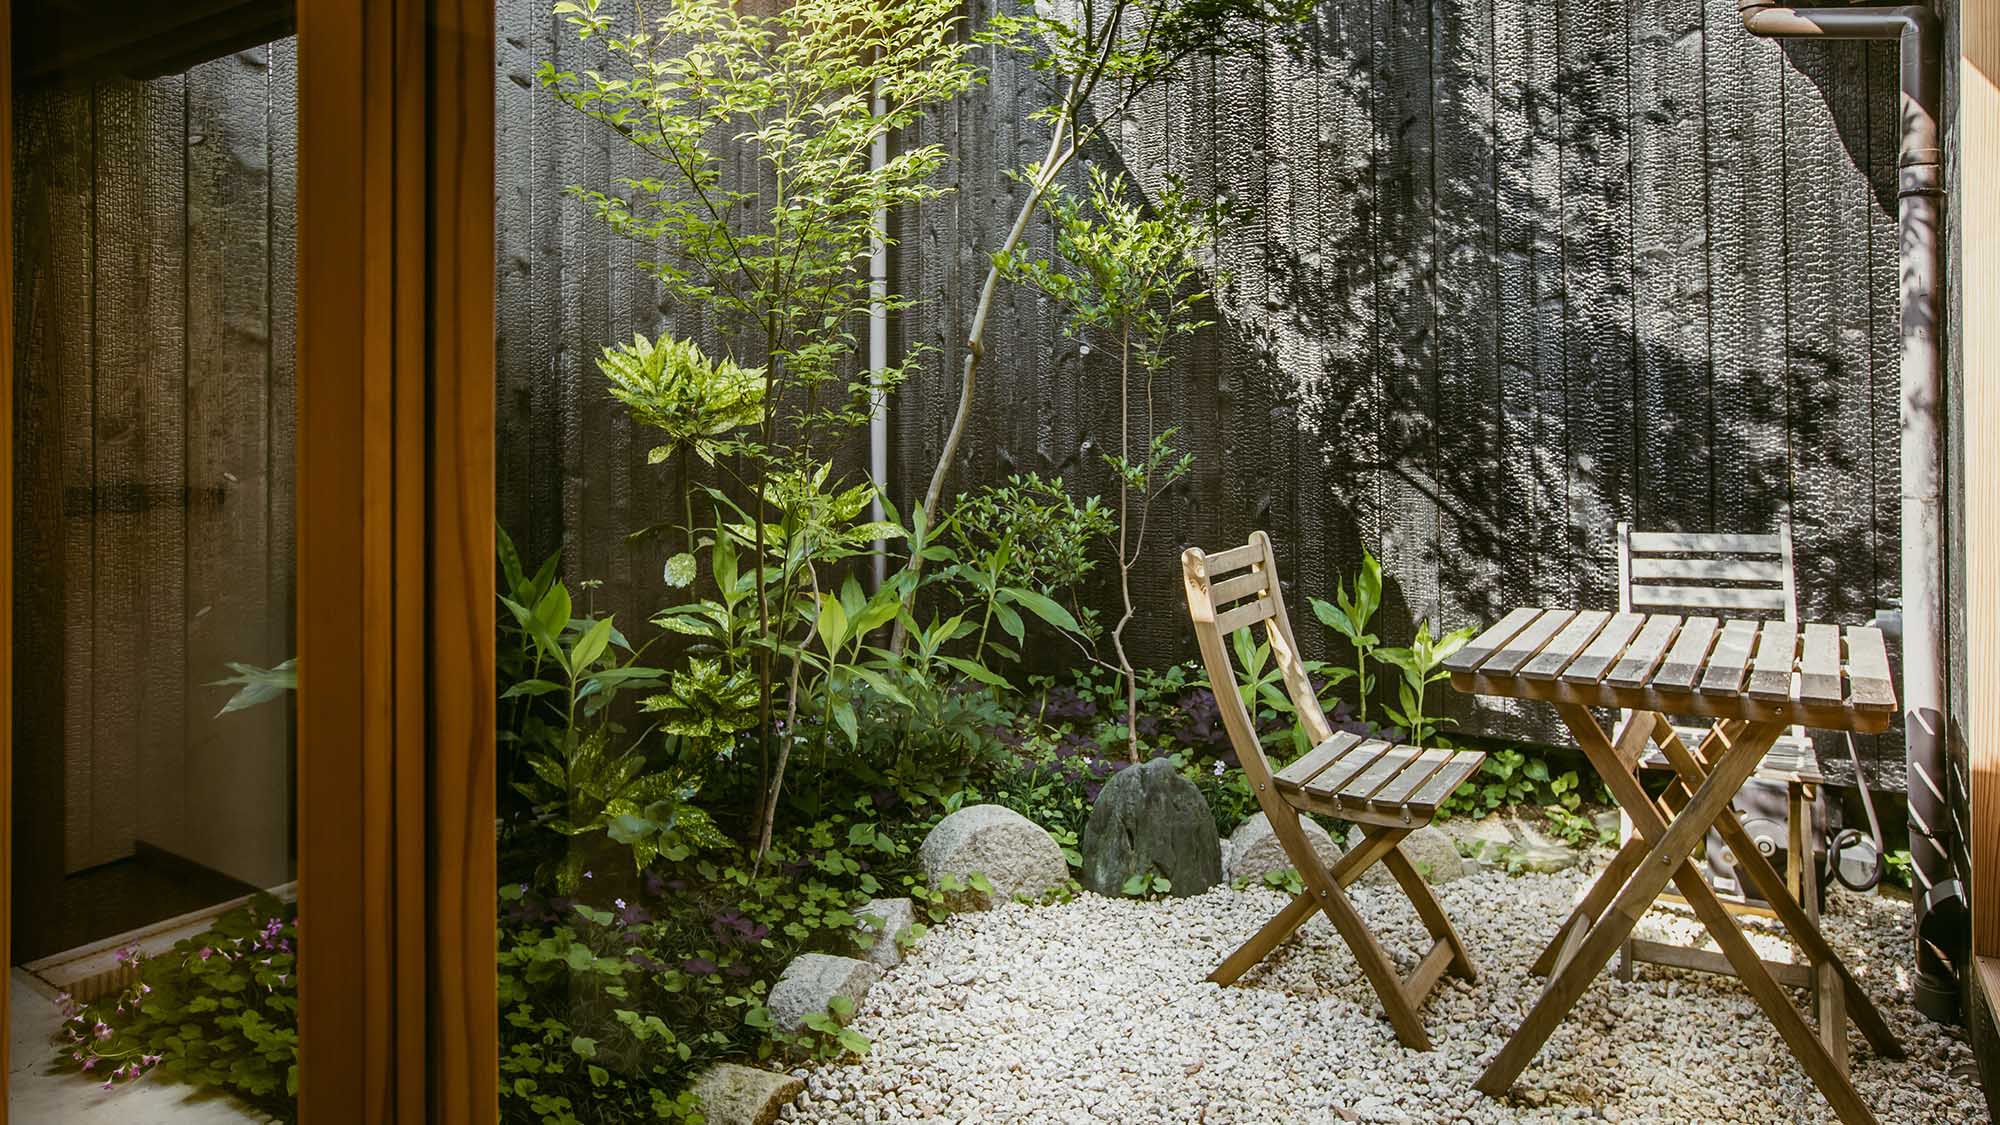 ・【honmachi中庭】中庭で、珈琲やお茶を飲みながらゆったりと過ごしてみてはいかがですか